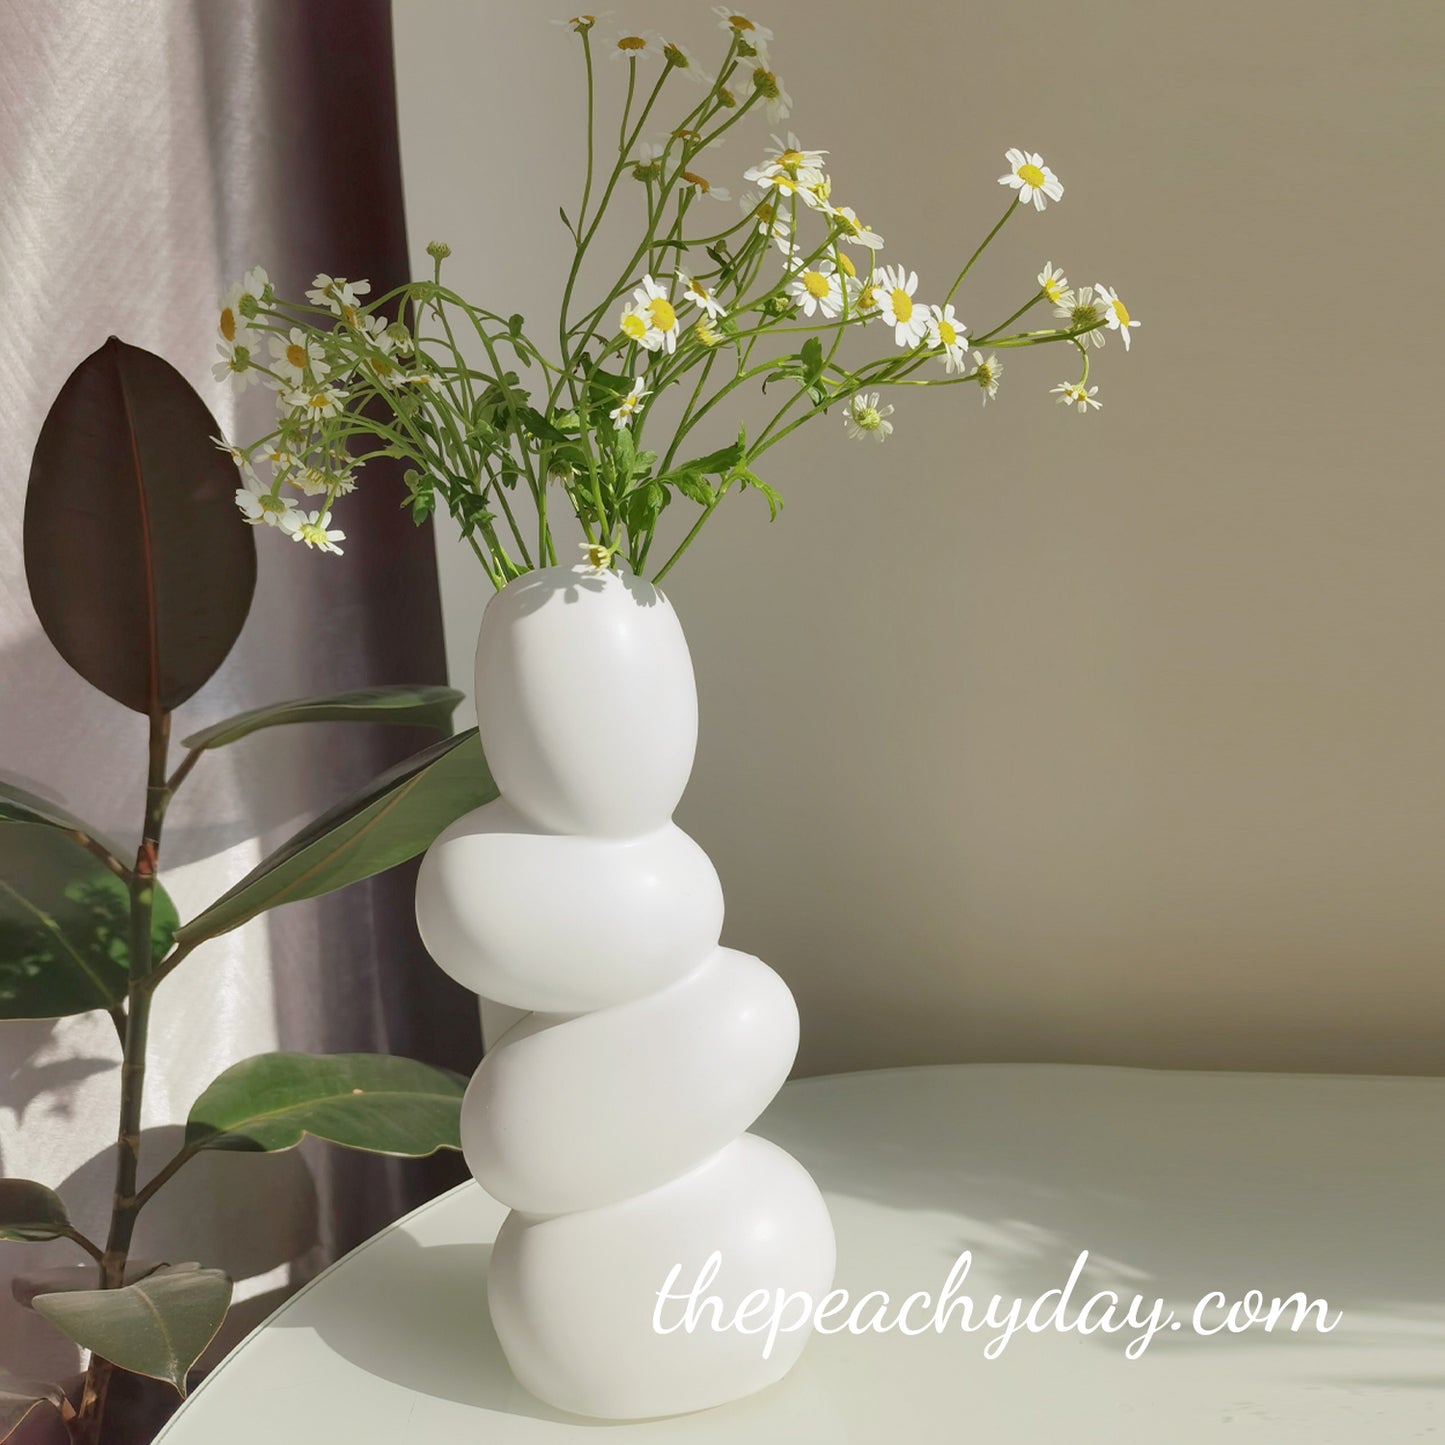 9.8" Ceramic Eggs-shaped Vase